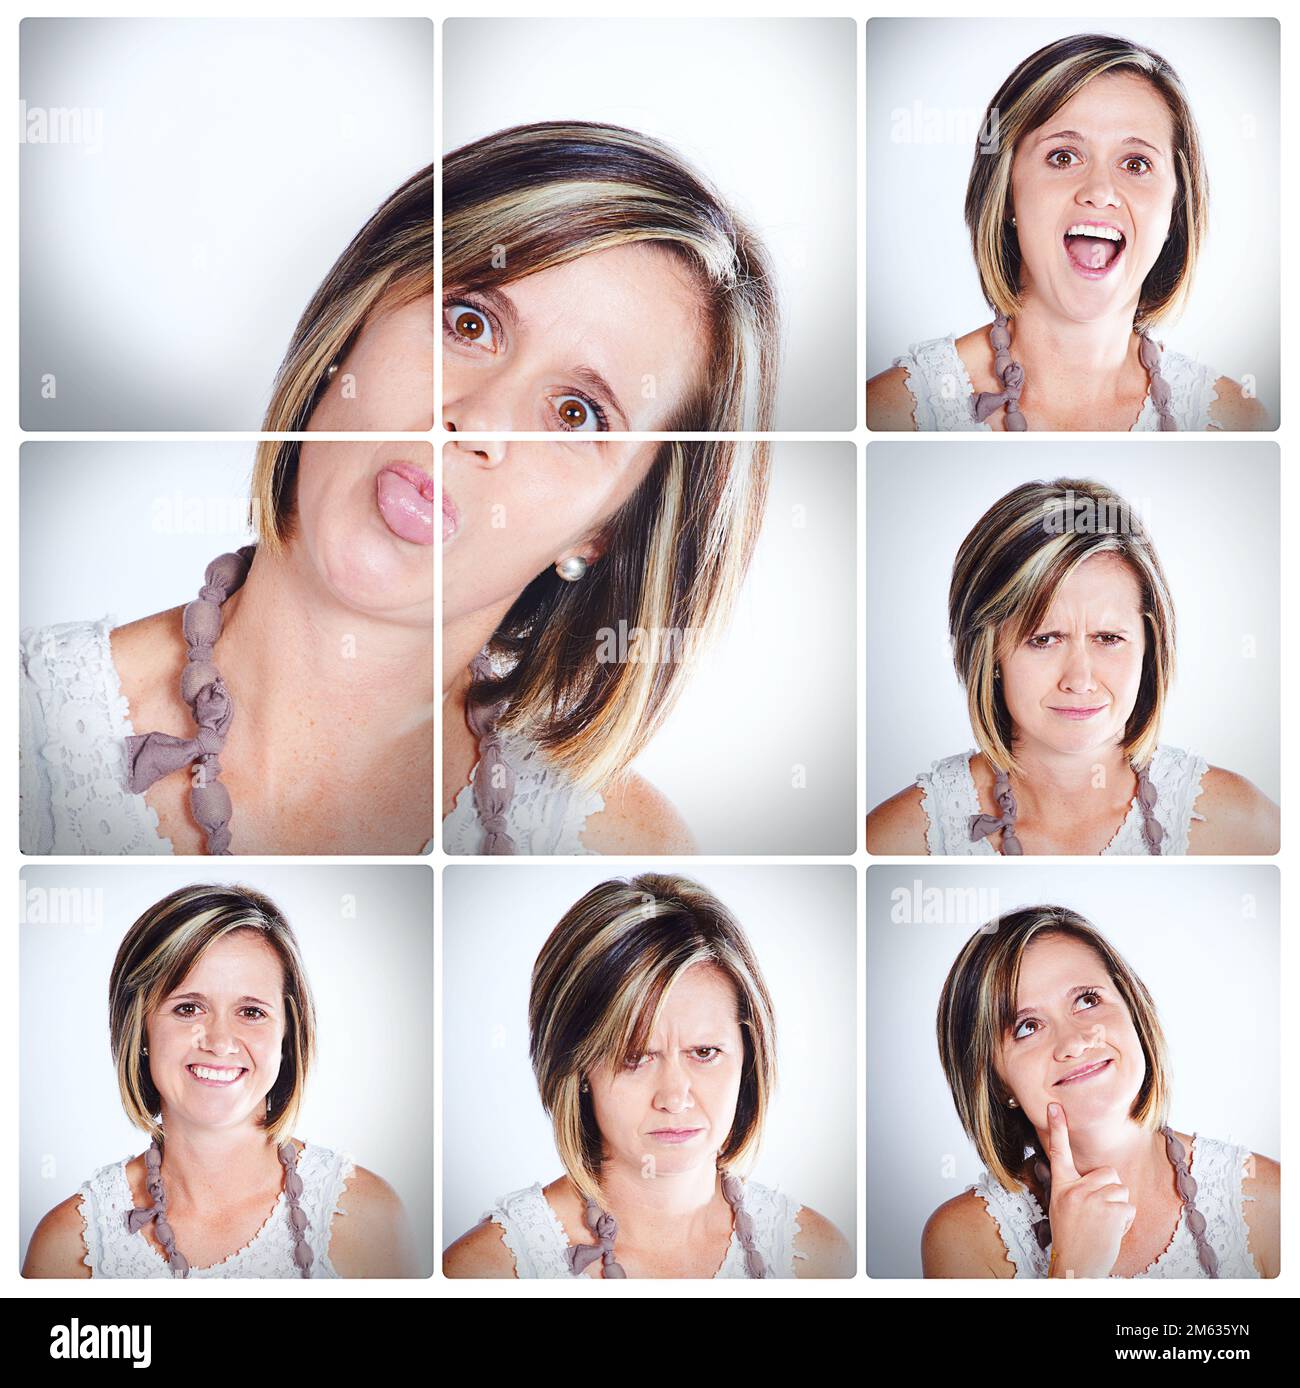 Meine vielen Launen. Kompositaufnahme einer Frau mit verschiedenen Gesichtsausdrücken. Stockfoto